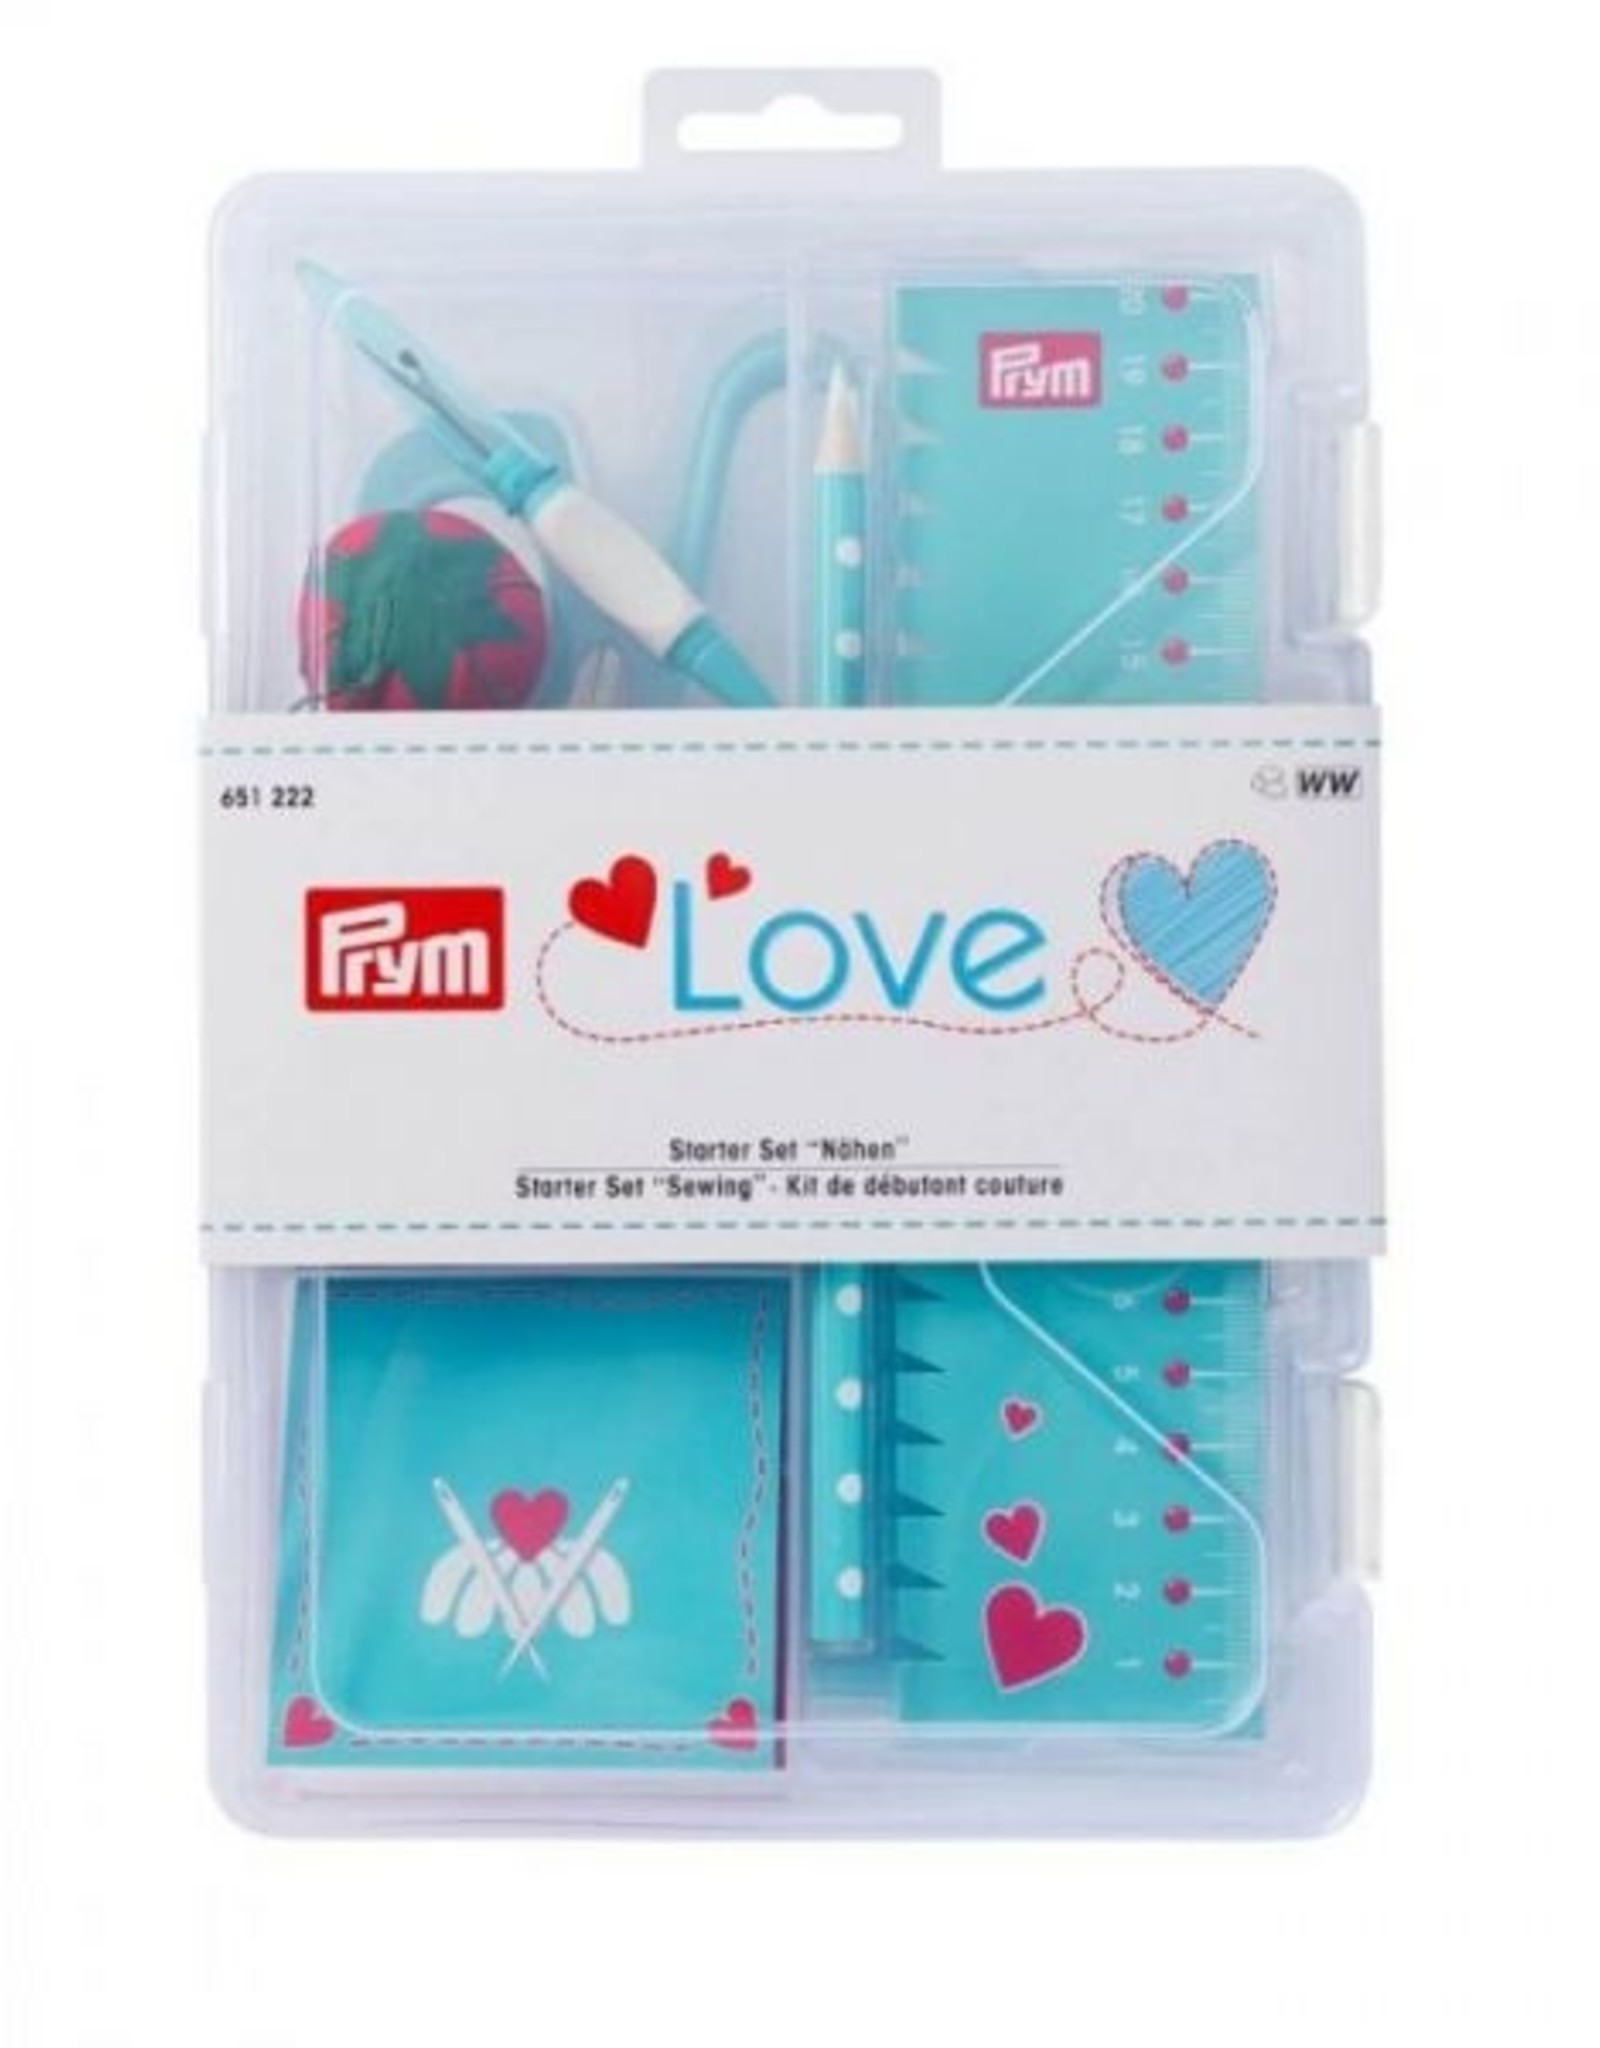 Prym Prym  - starter set 'sewing' Love turquoise  - 651 222